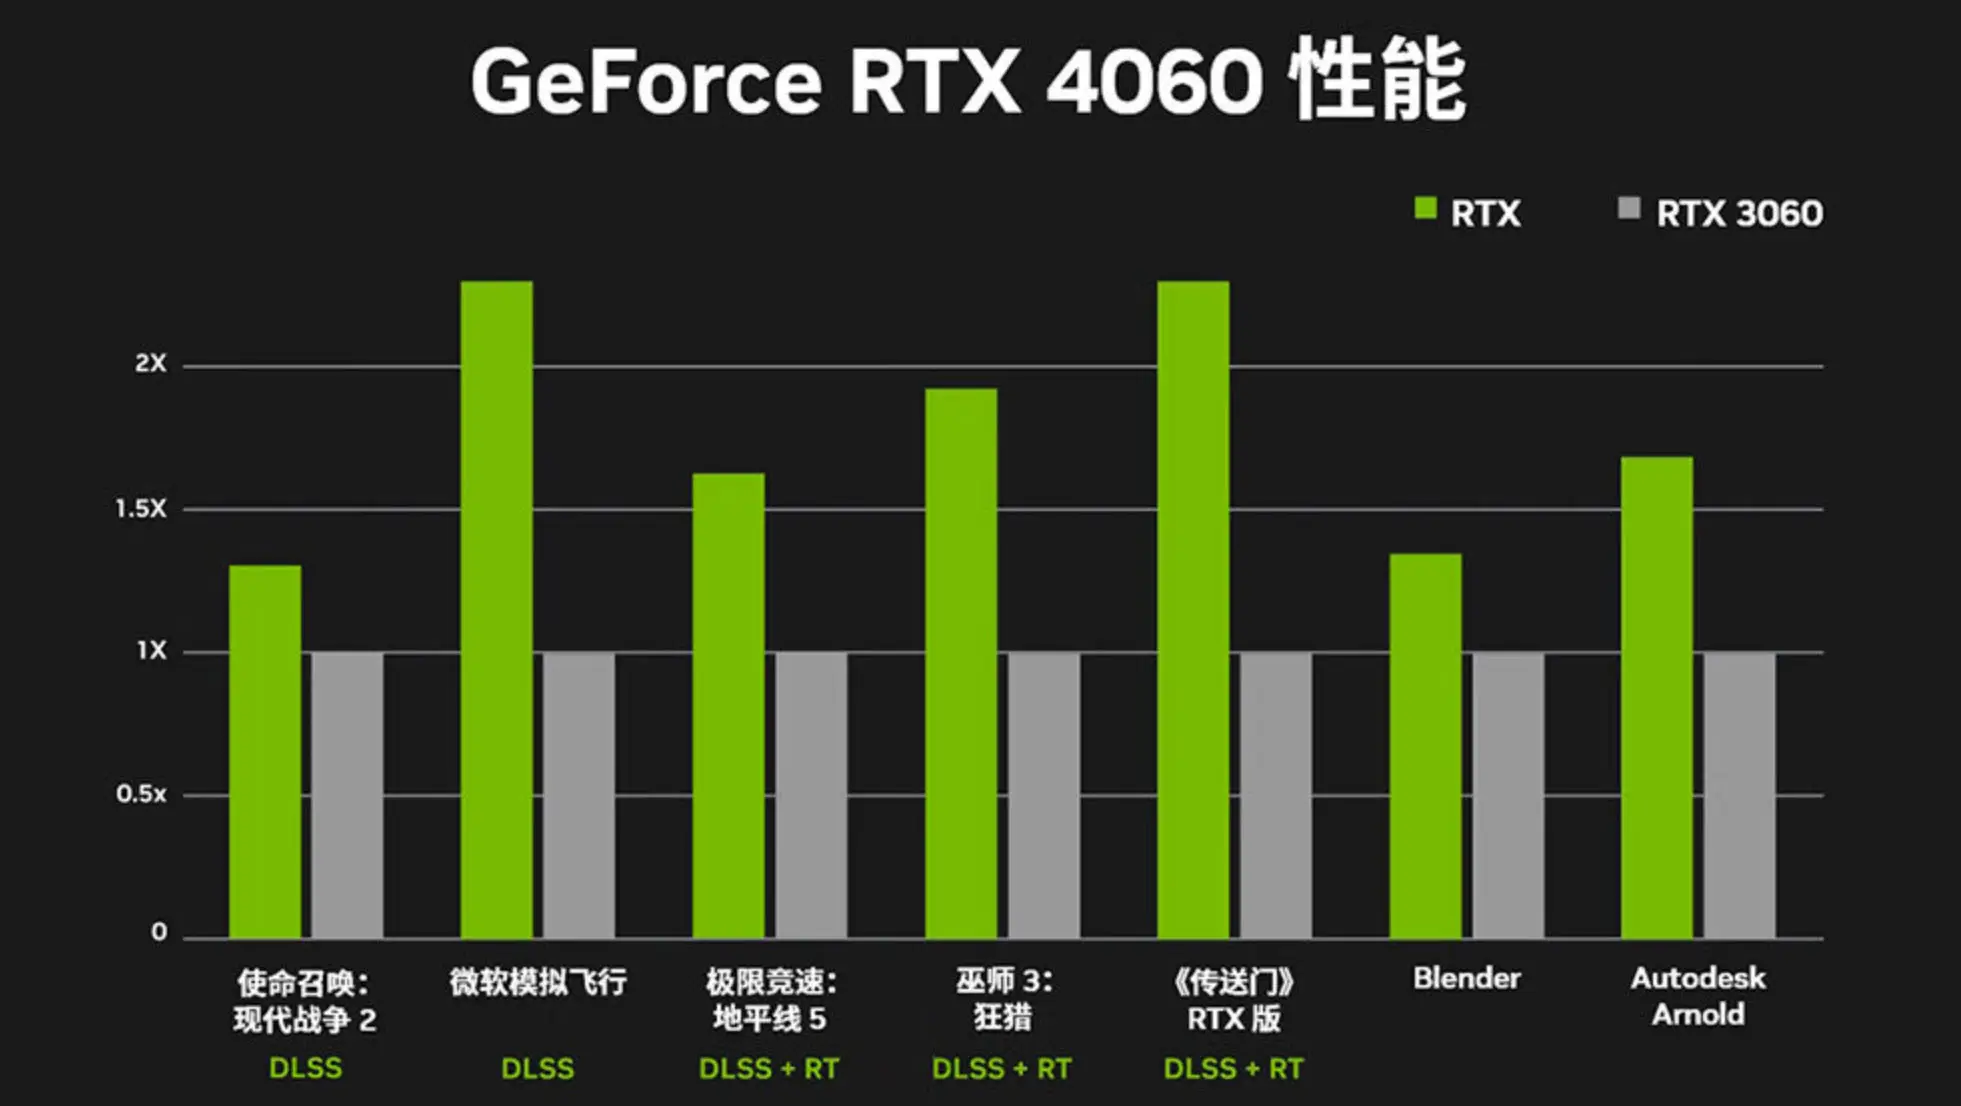 GT220 vs GTX970：显卡性能大对比，游戏、图形处理谁更强？  第6张